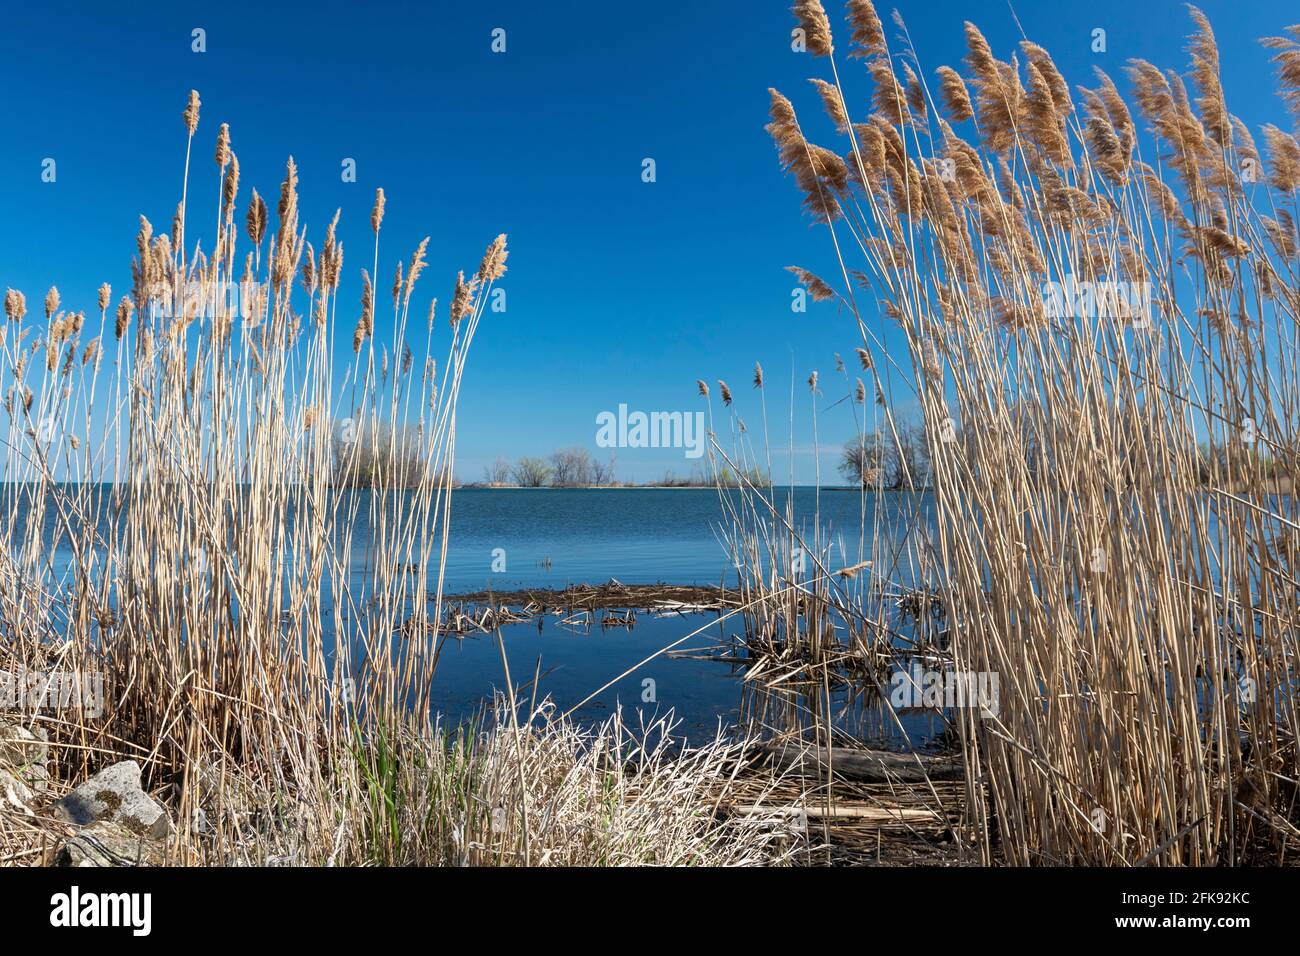 Rockwood, Michigan - Fragmitas no nativas (Phragmitas australis) que crecen en la orilla del Lago Erie. Phragmitas es un pasto de humedal invasivo que se deshace Foto de stock